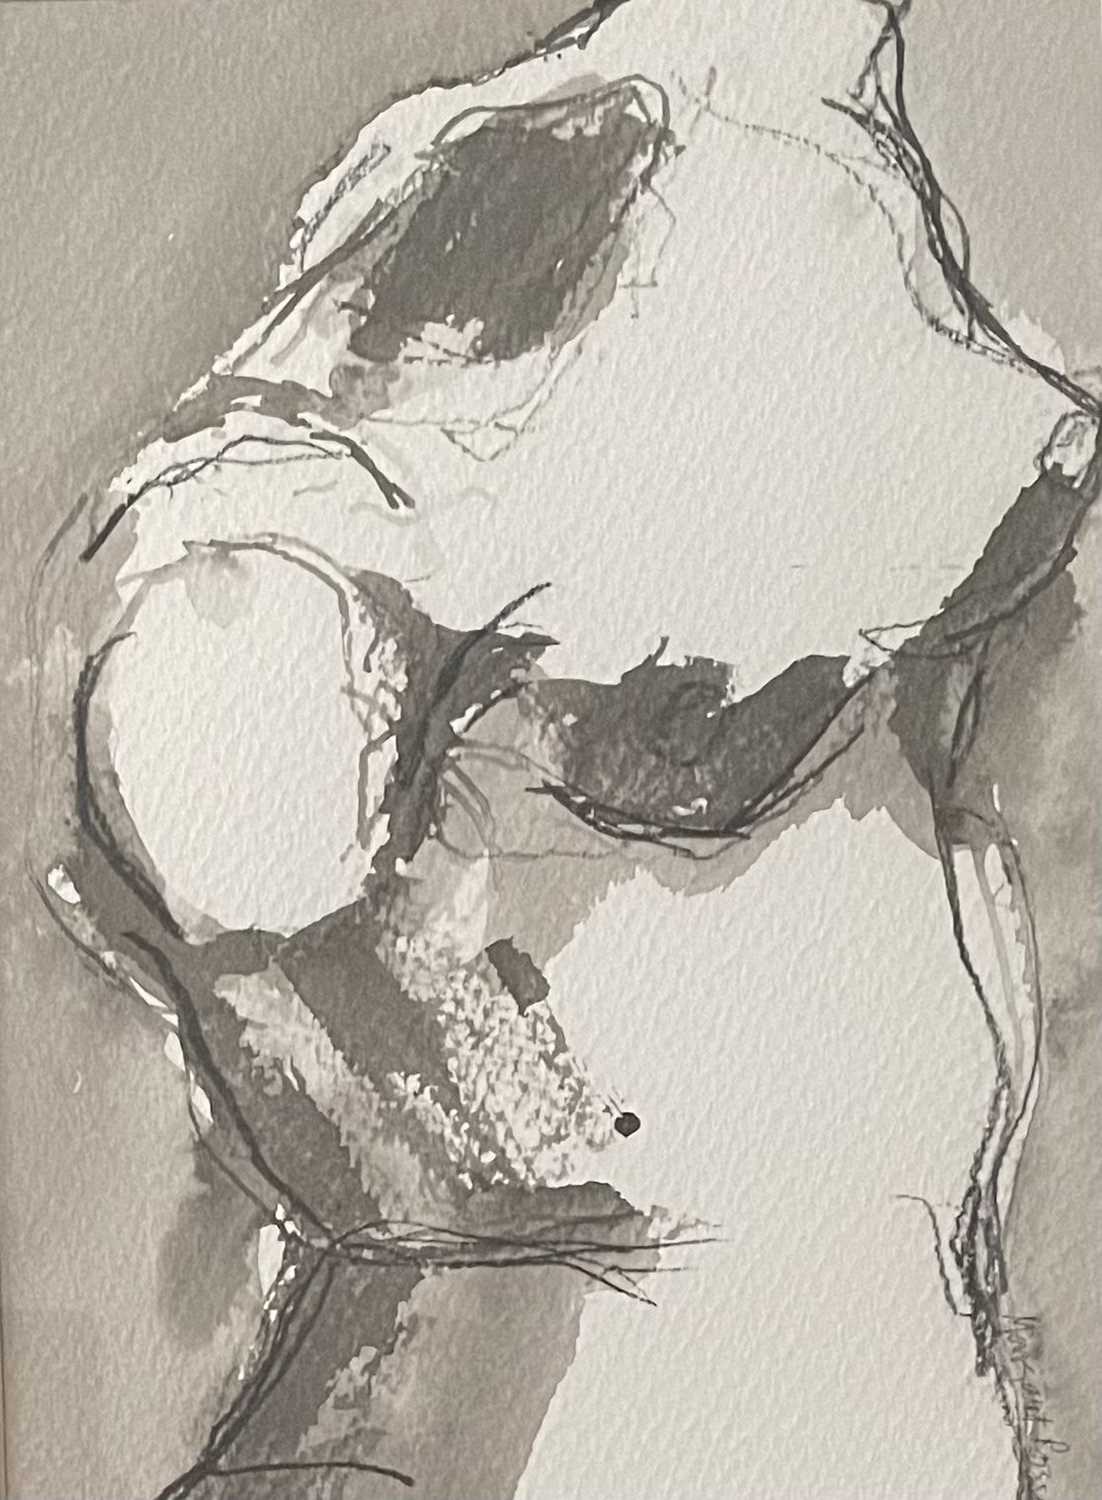 Margaret Prosser. “Female Torso”. Pen & ink study. 44 x 33cms. Margaret is a South wales based